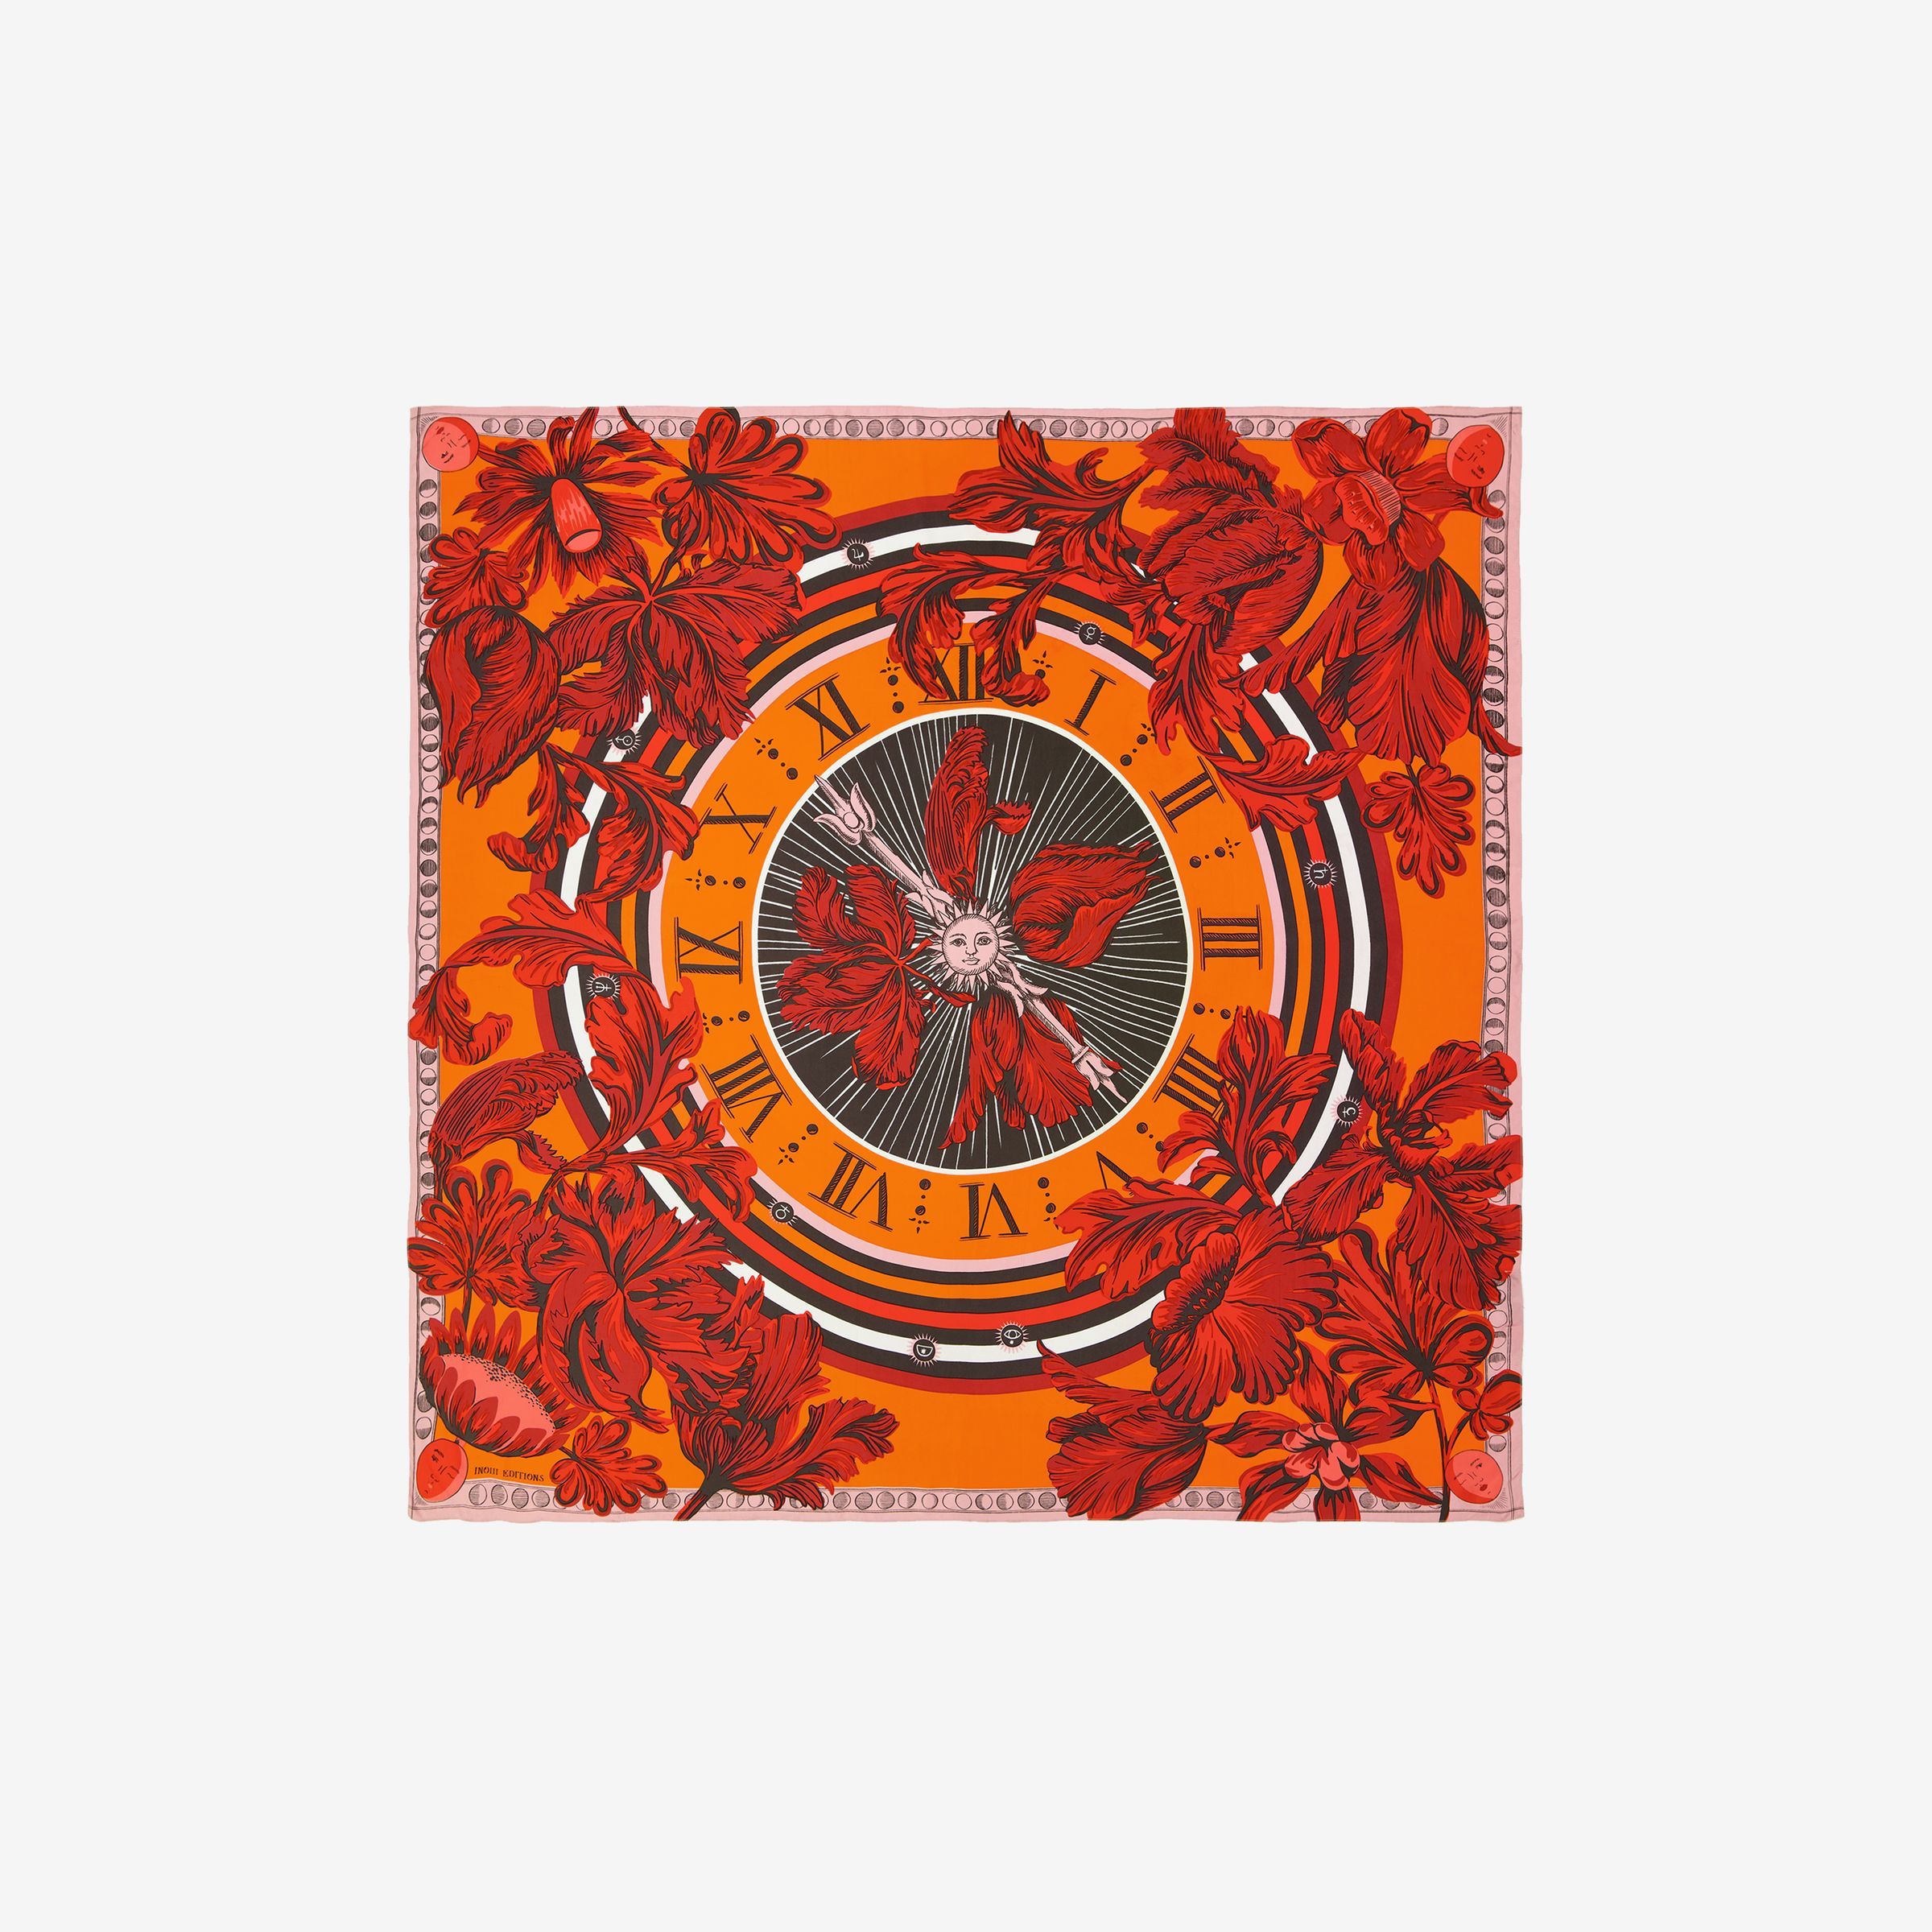 Viereck 130 - Horloge - Orange